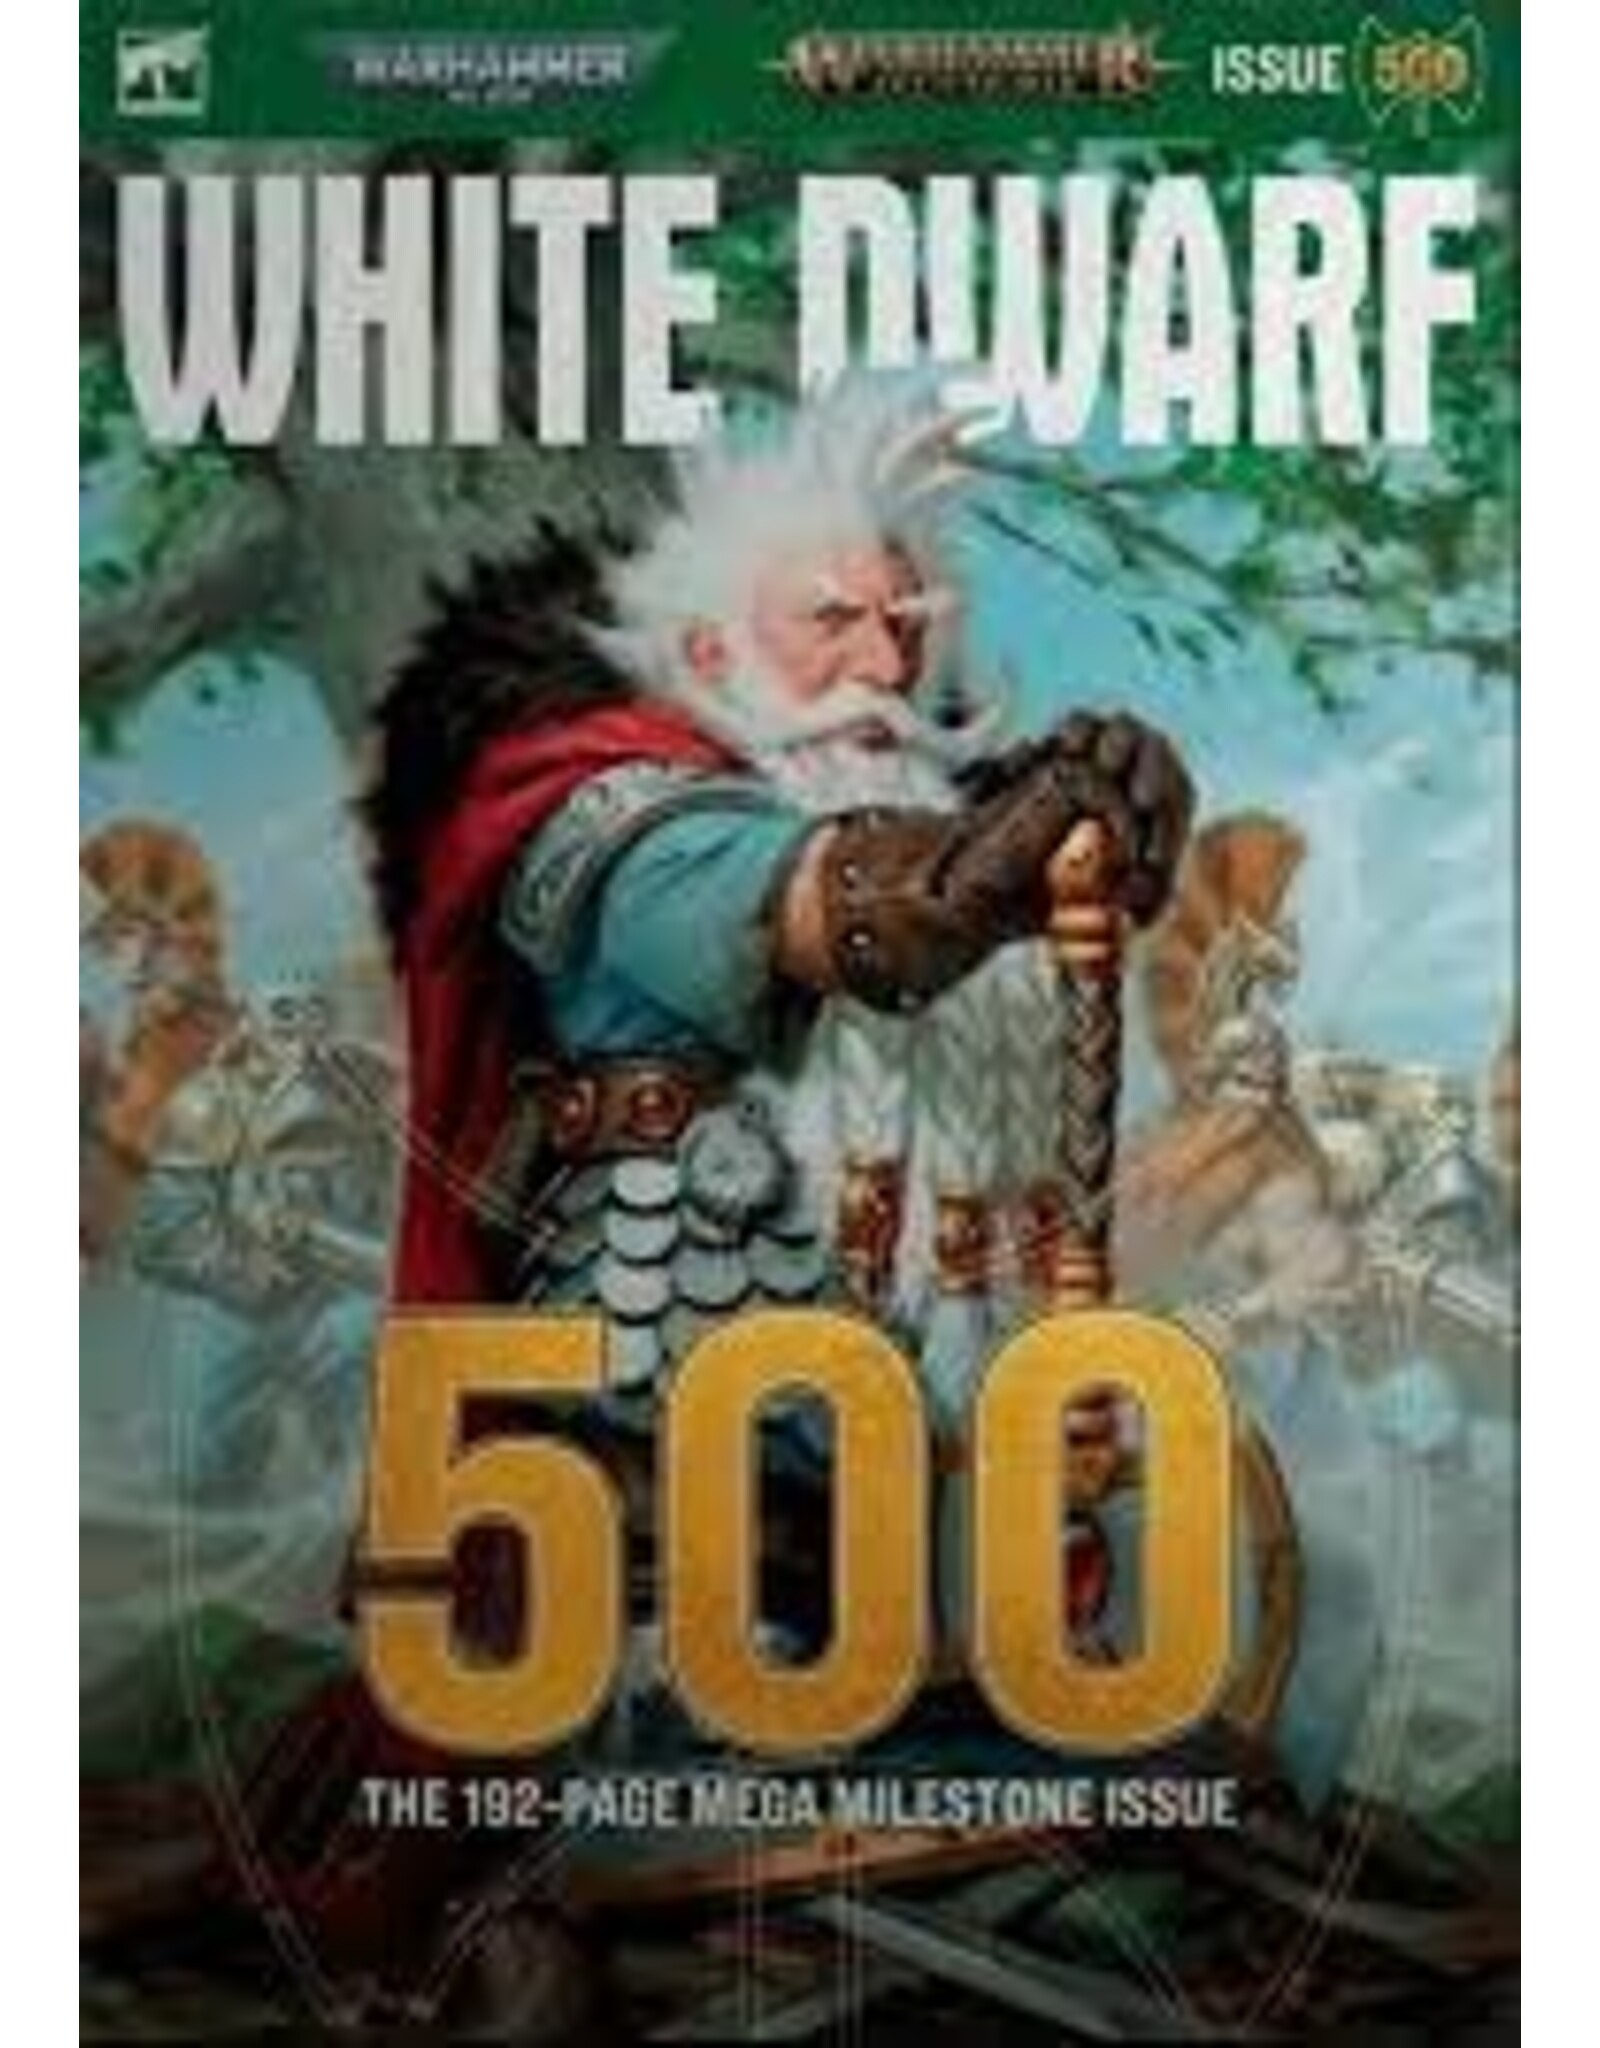 White Dwarf White Dwarf 500 (May-24)